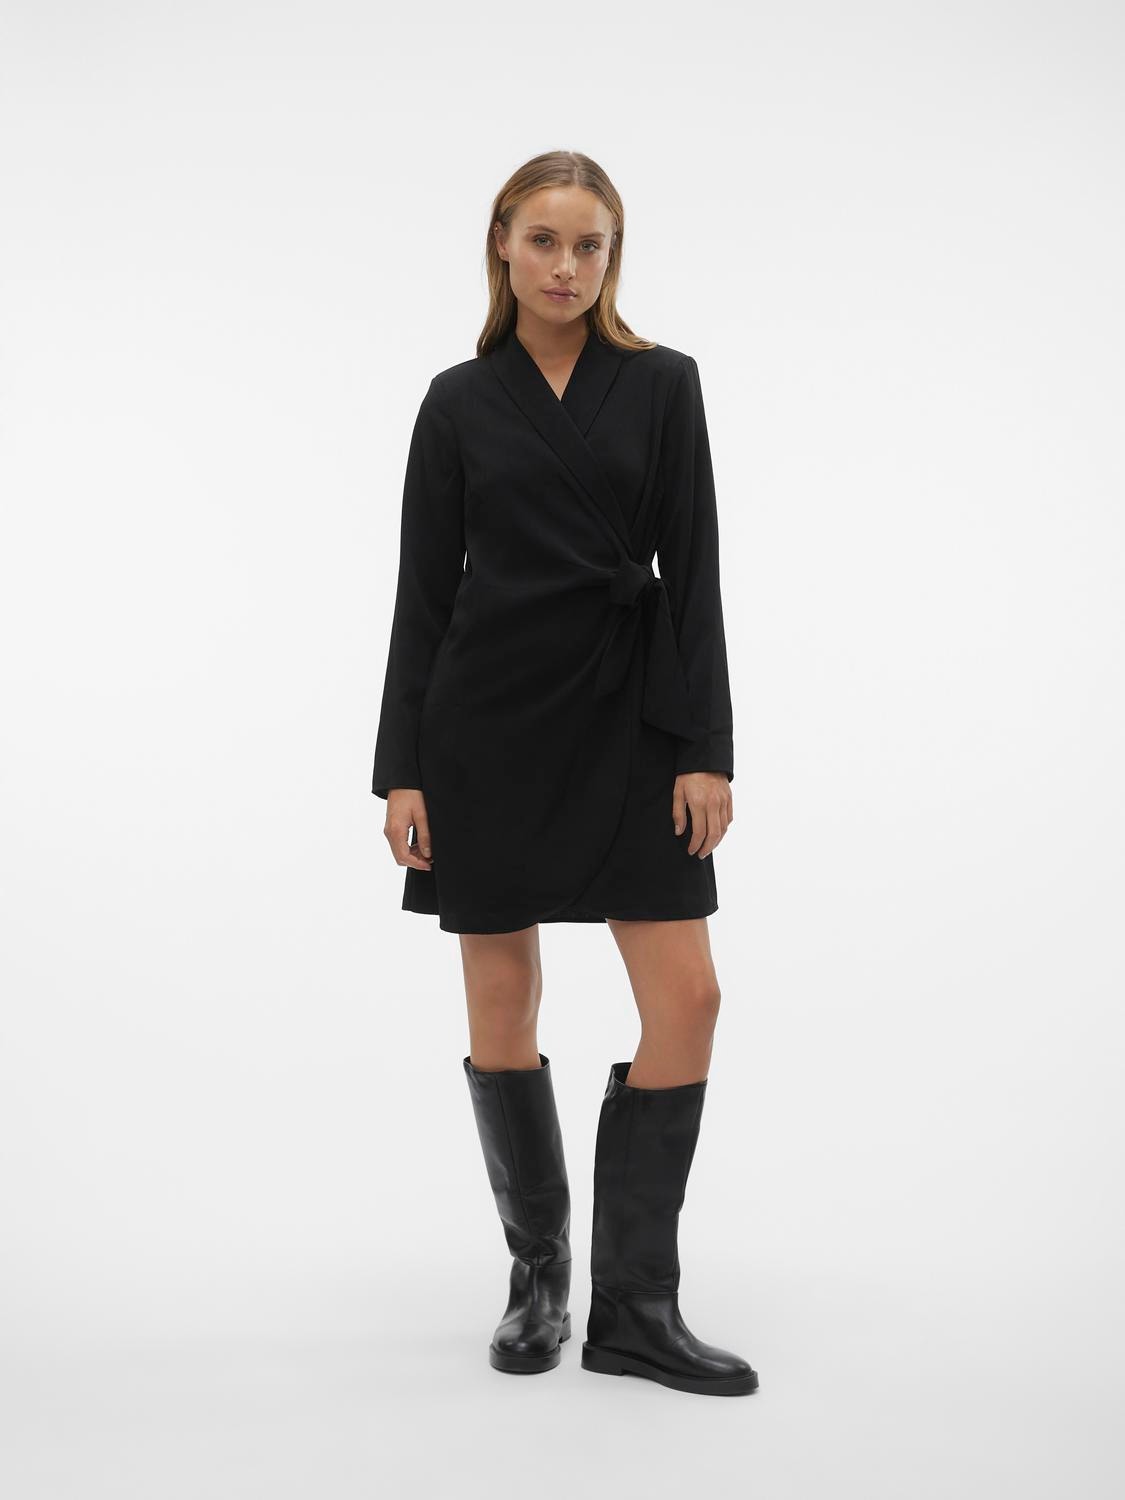 Vero Moda VMGRACEY Short dress -Black - 10305514